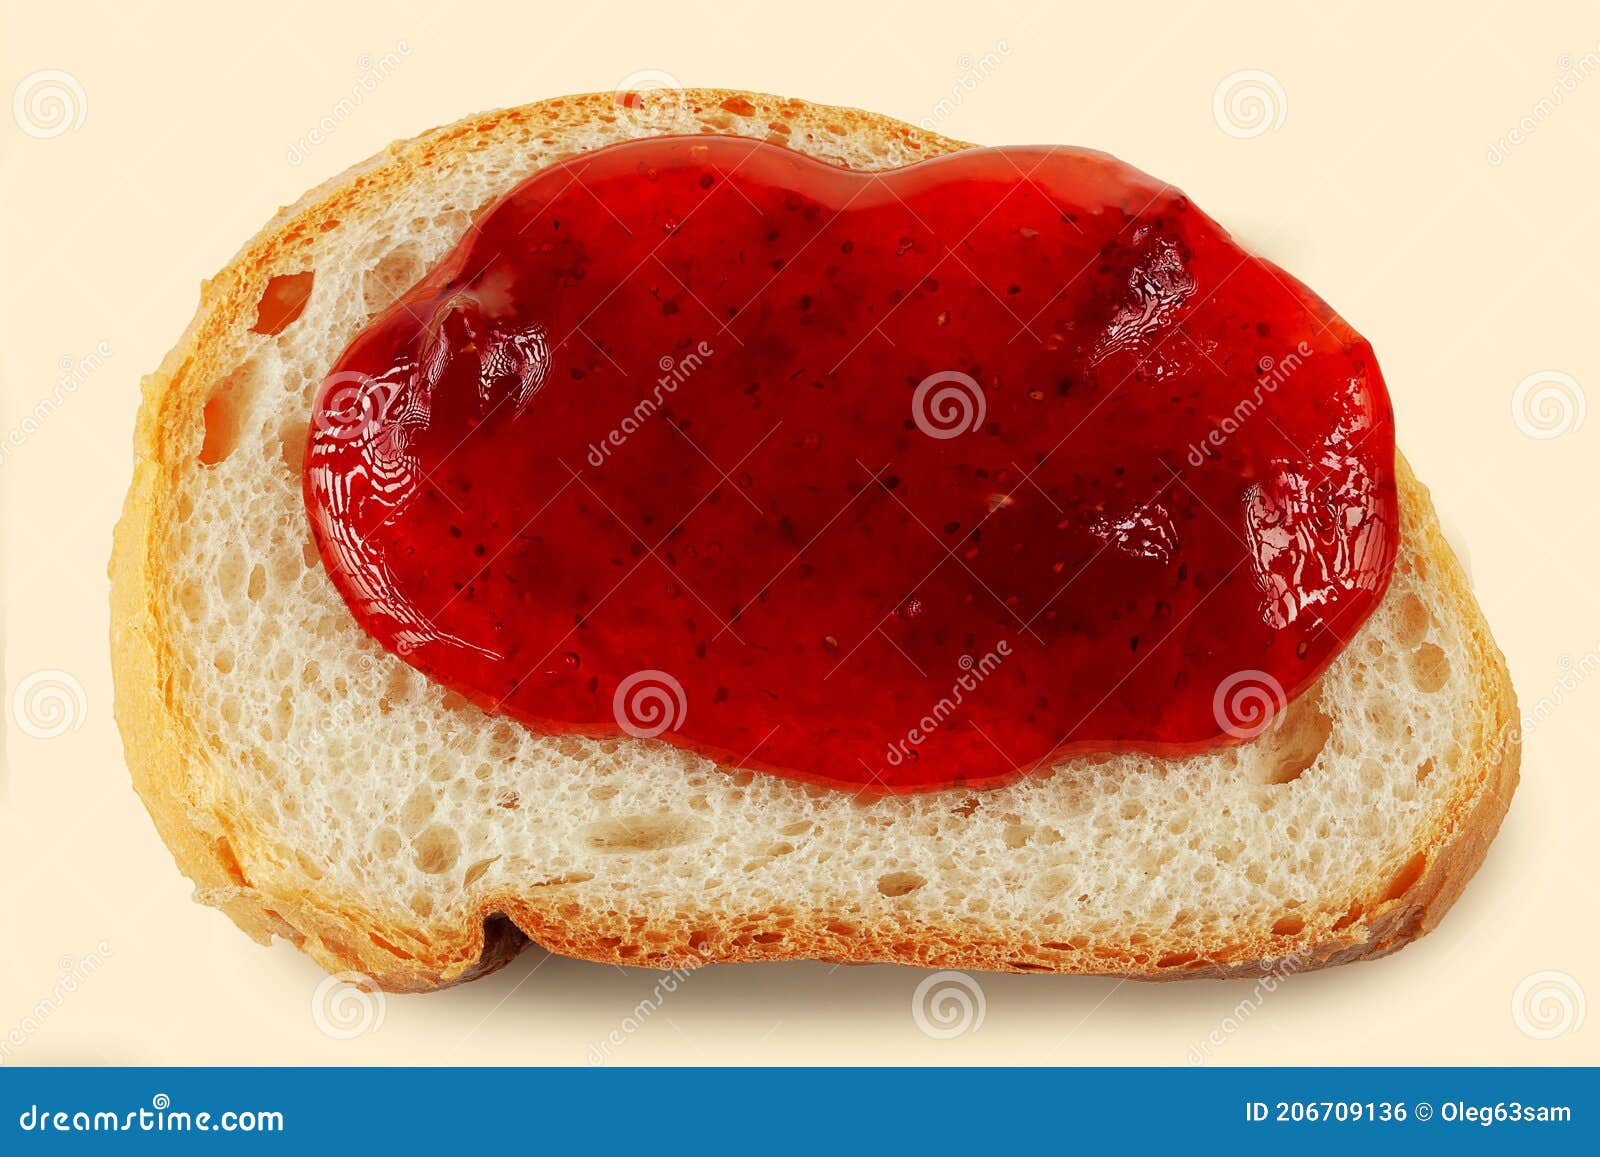 美食香甜草莓面包桌上摆拍摄影图配图高清摄影大图-千库网